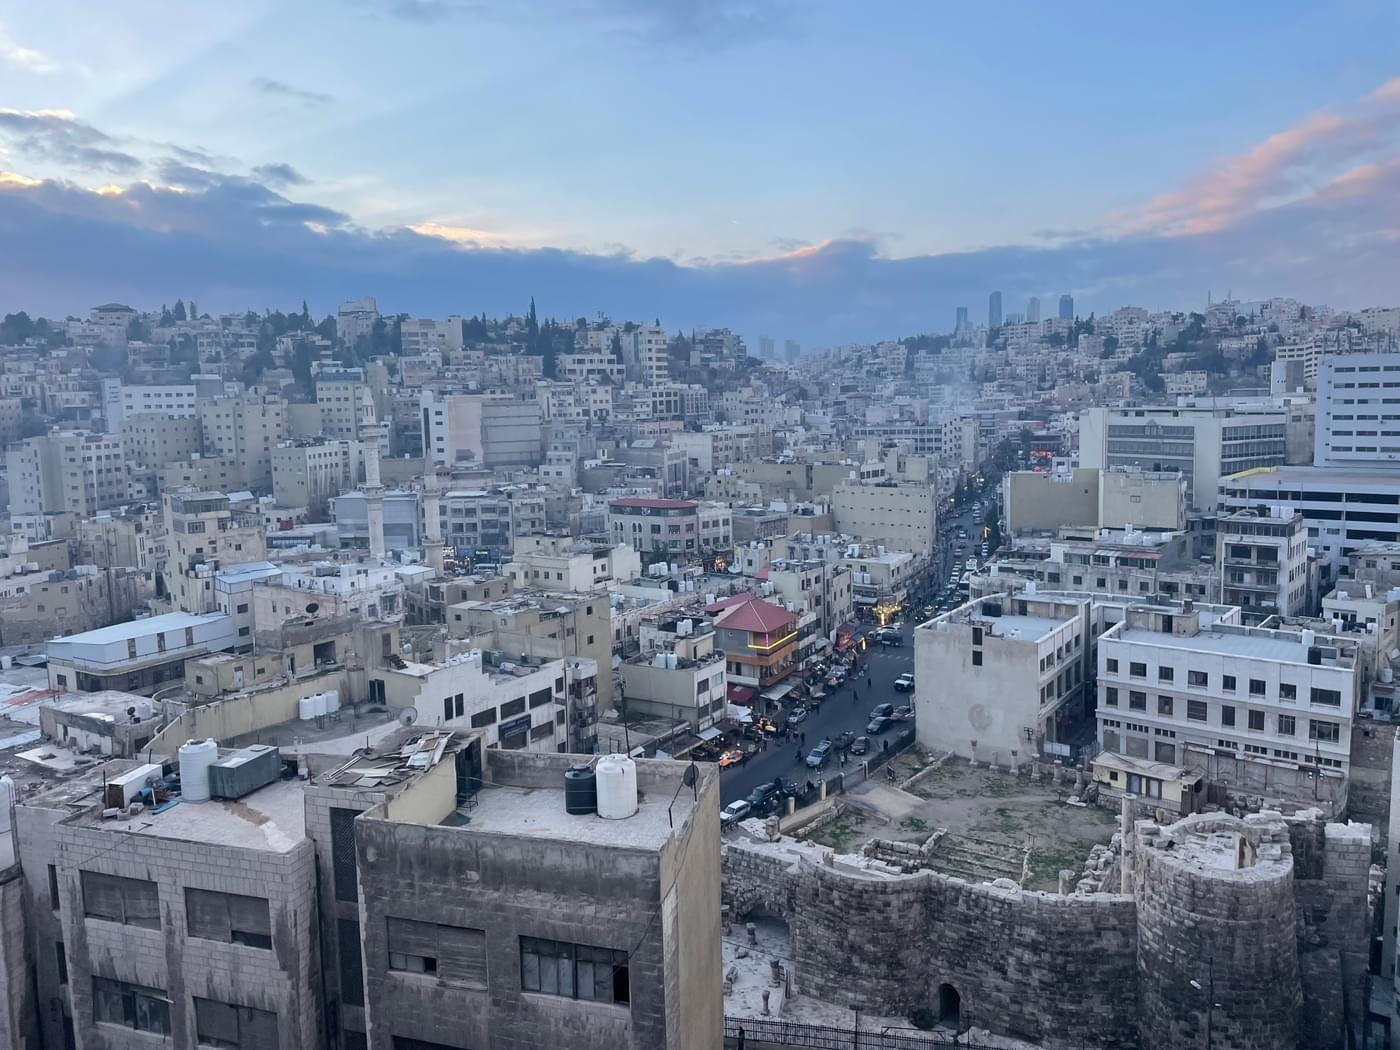 Amman, the capital of Jordan